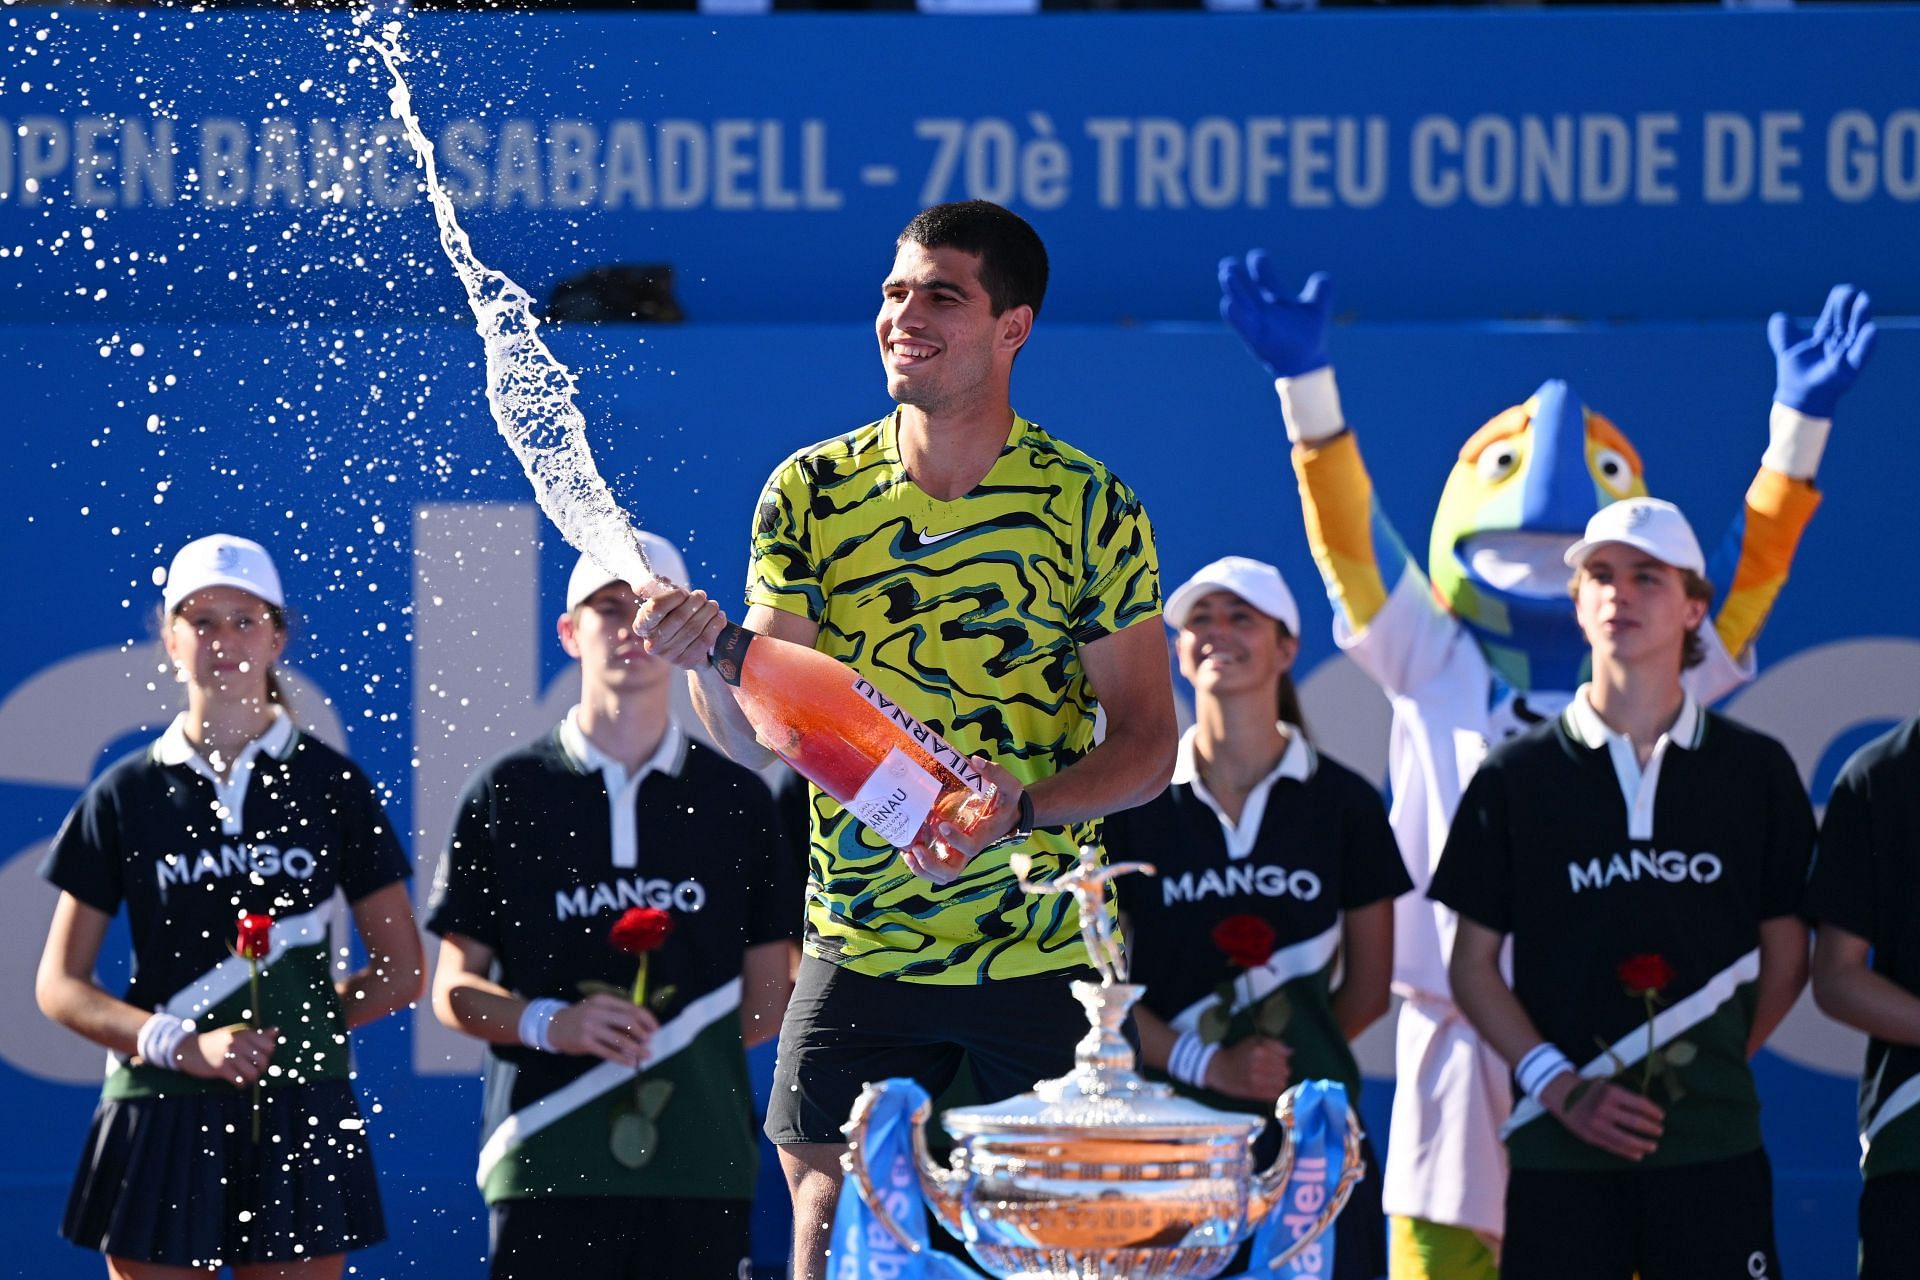 Carlos Alcaraz celebrating his triumph in Barcelona